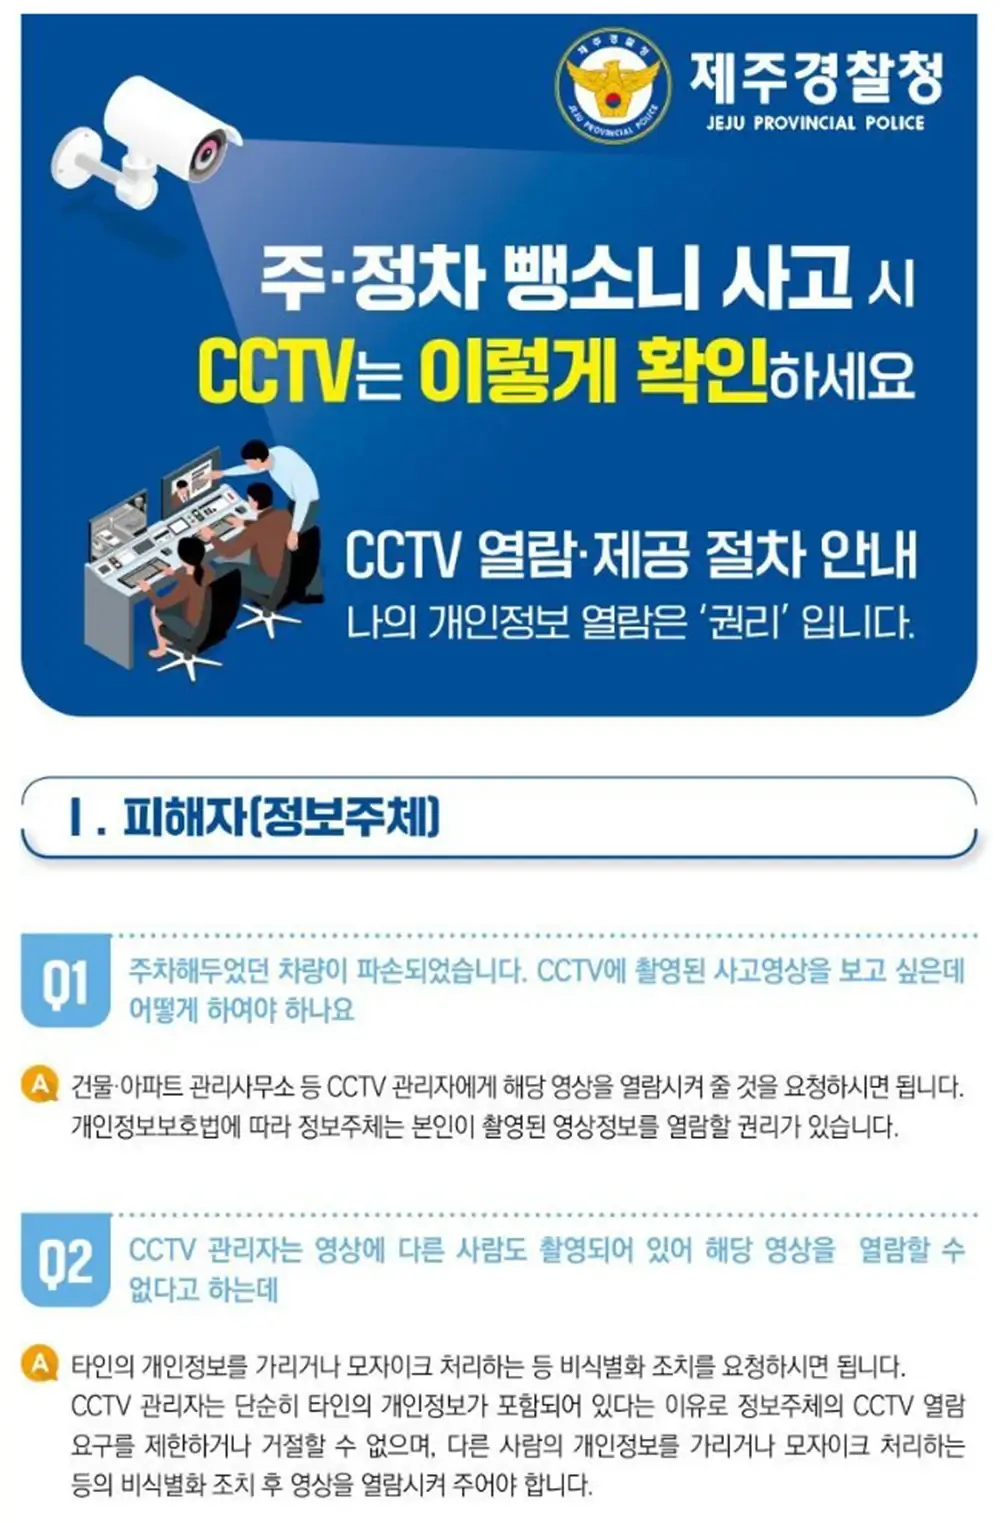 주정차 뺑소니 사고 시 CCTV 확인 방법